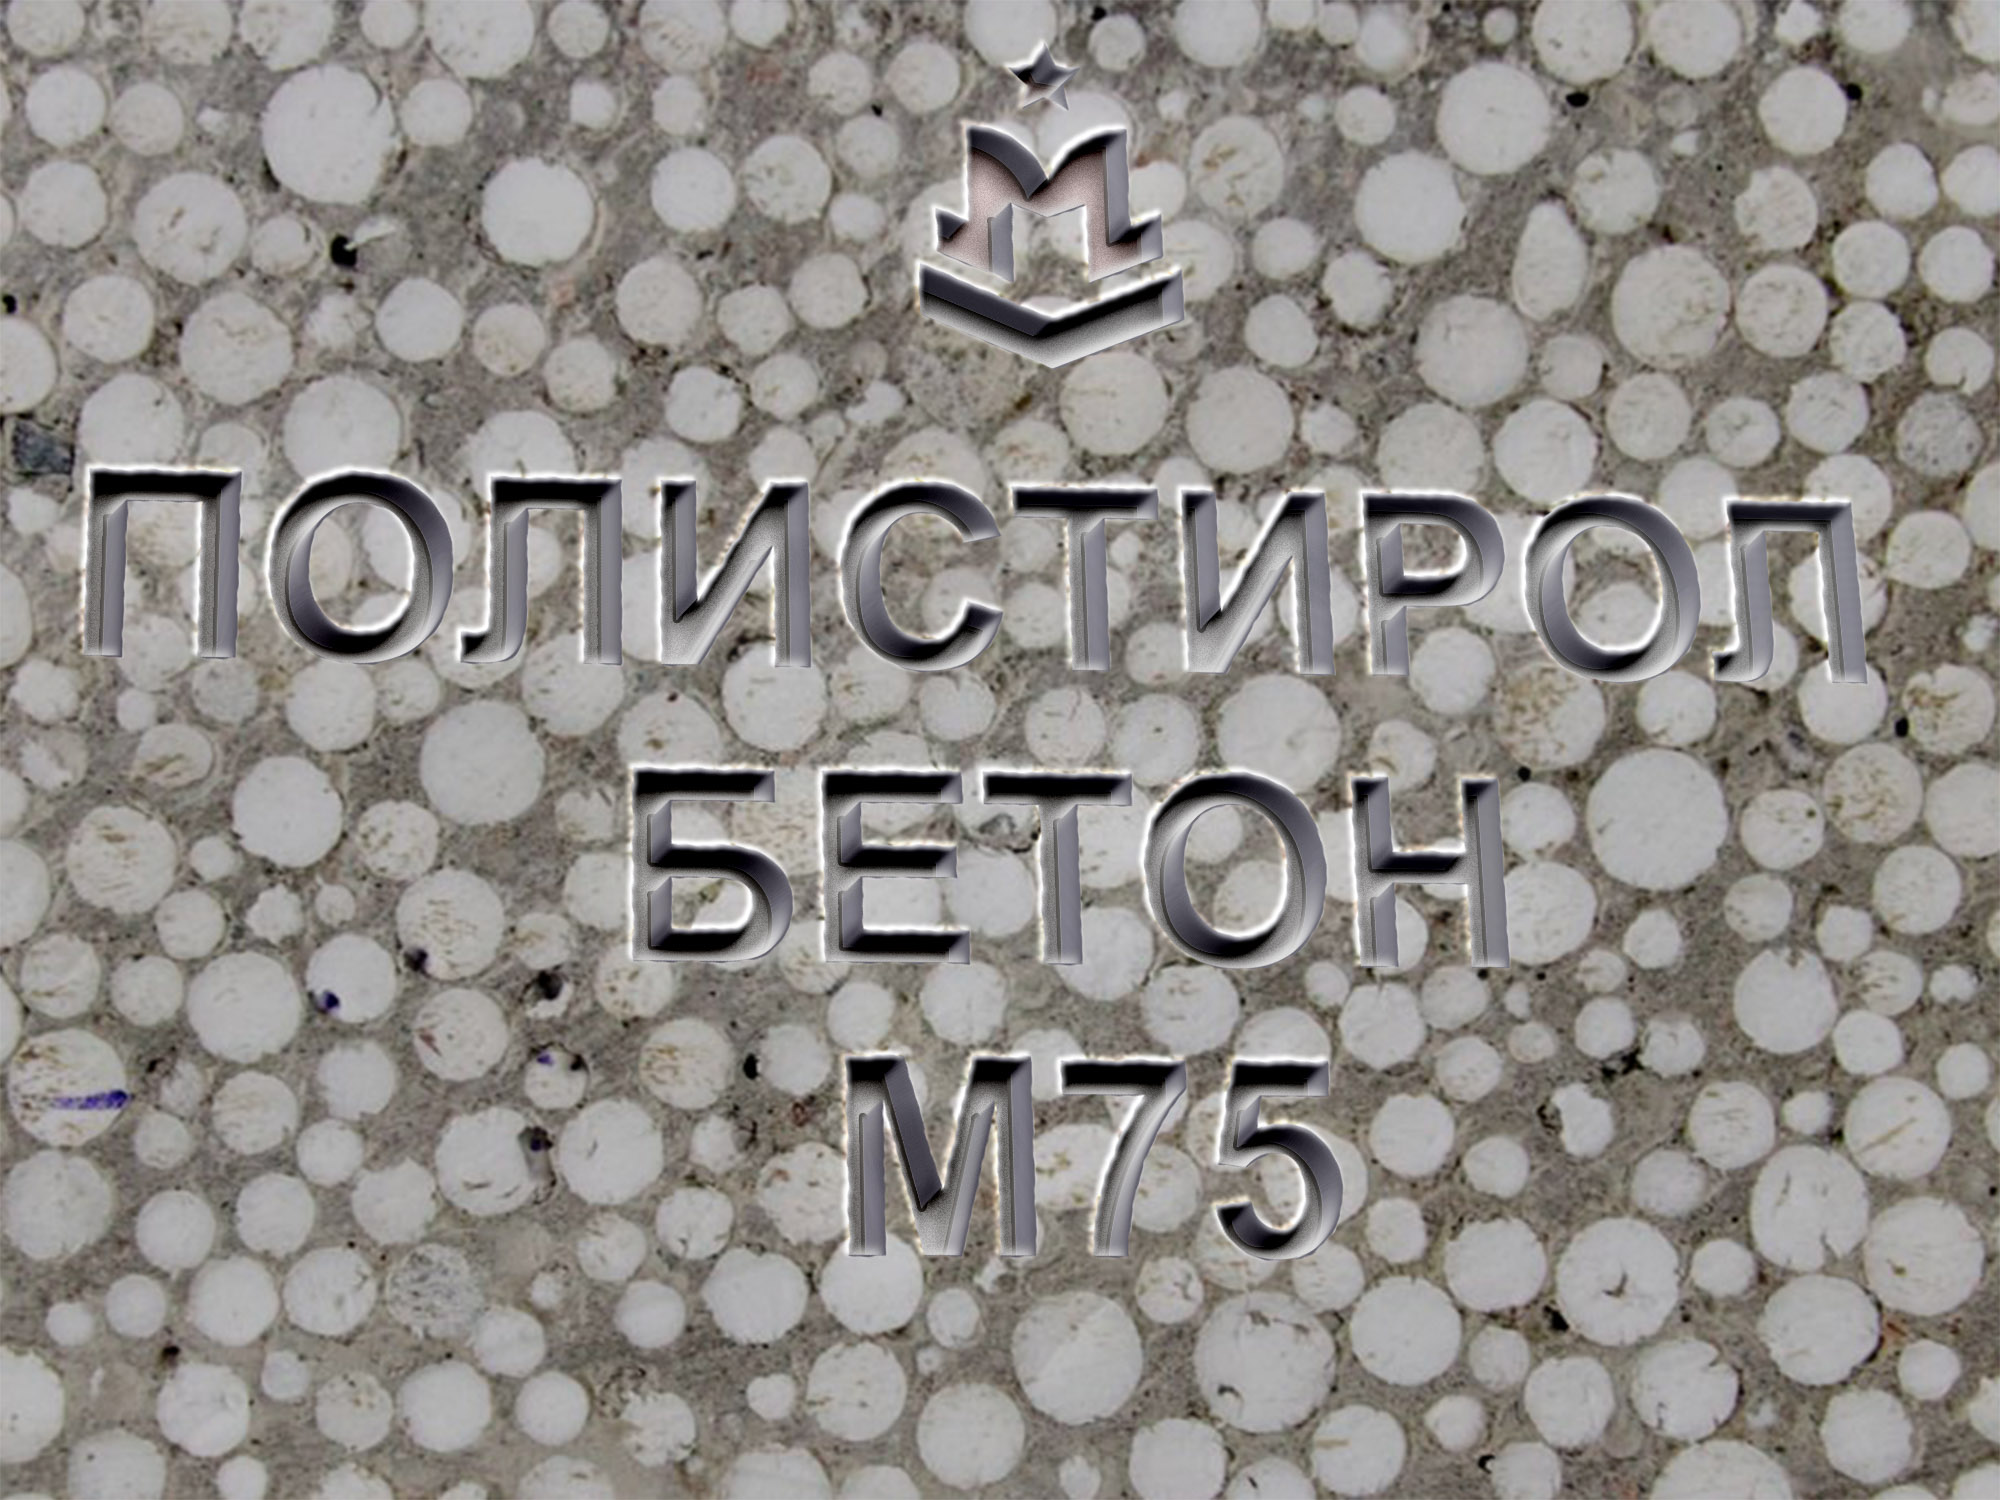 Купить полистиролбетон М75 В5 МПа D600 в Москве. Доставка полистиролбетона  от производителя М75 | Завод «МБЗ»